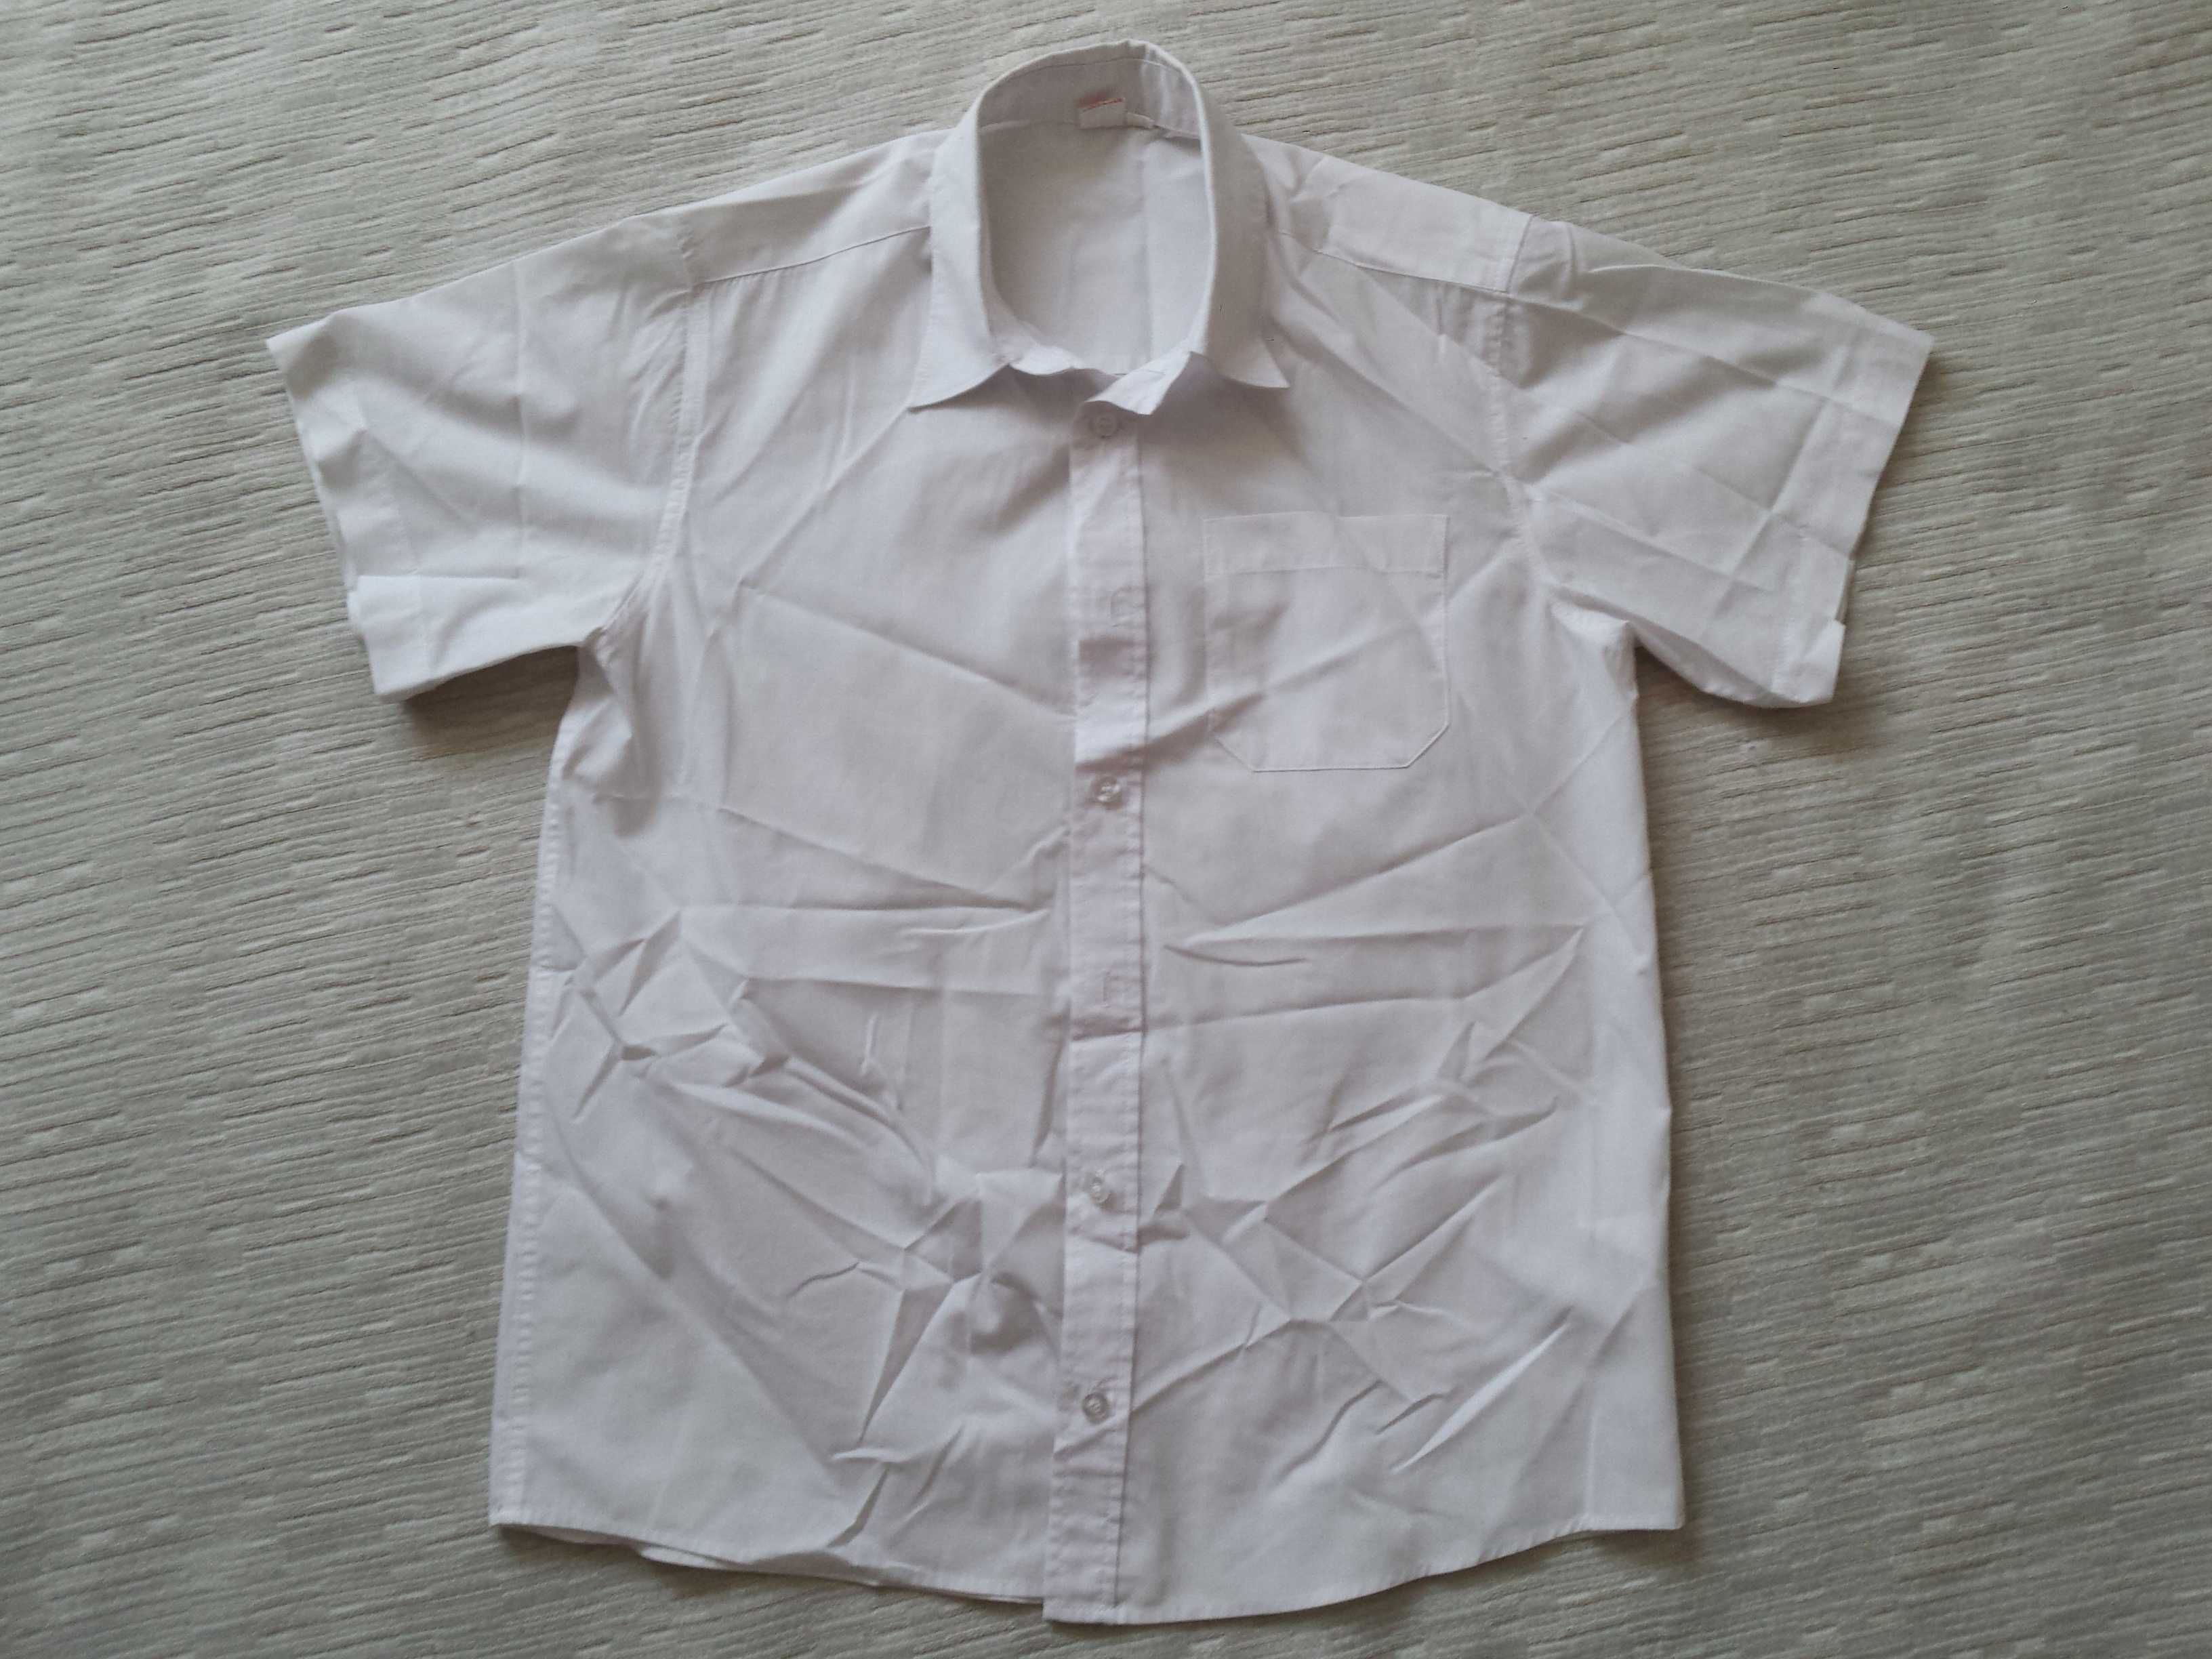 COOLCLUB koszula roz. M (wg metki 164), krótki rękaw, bawełna, biała